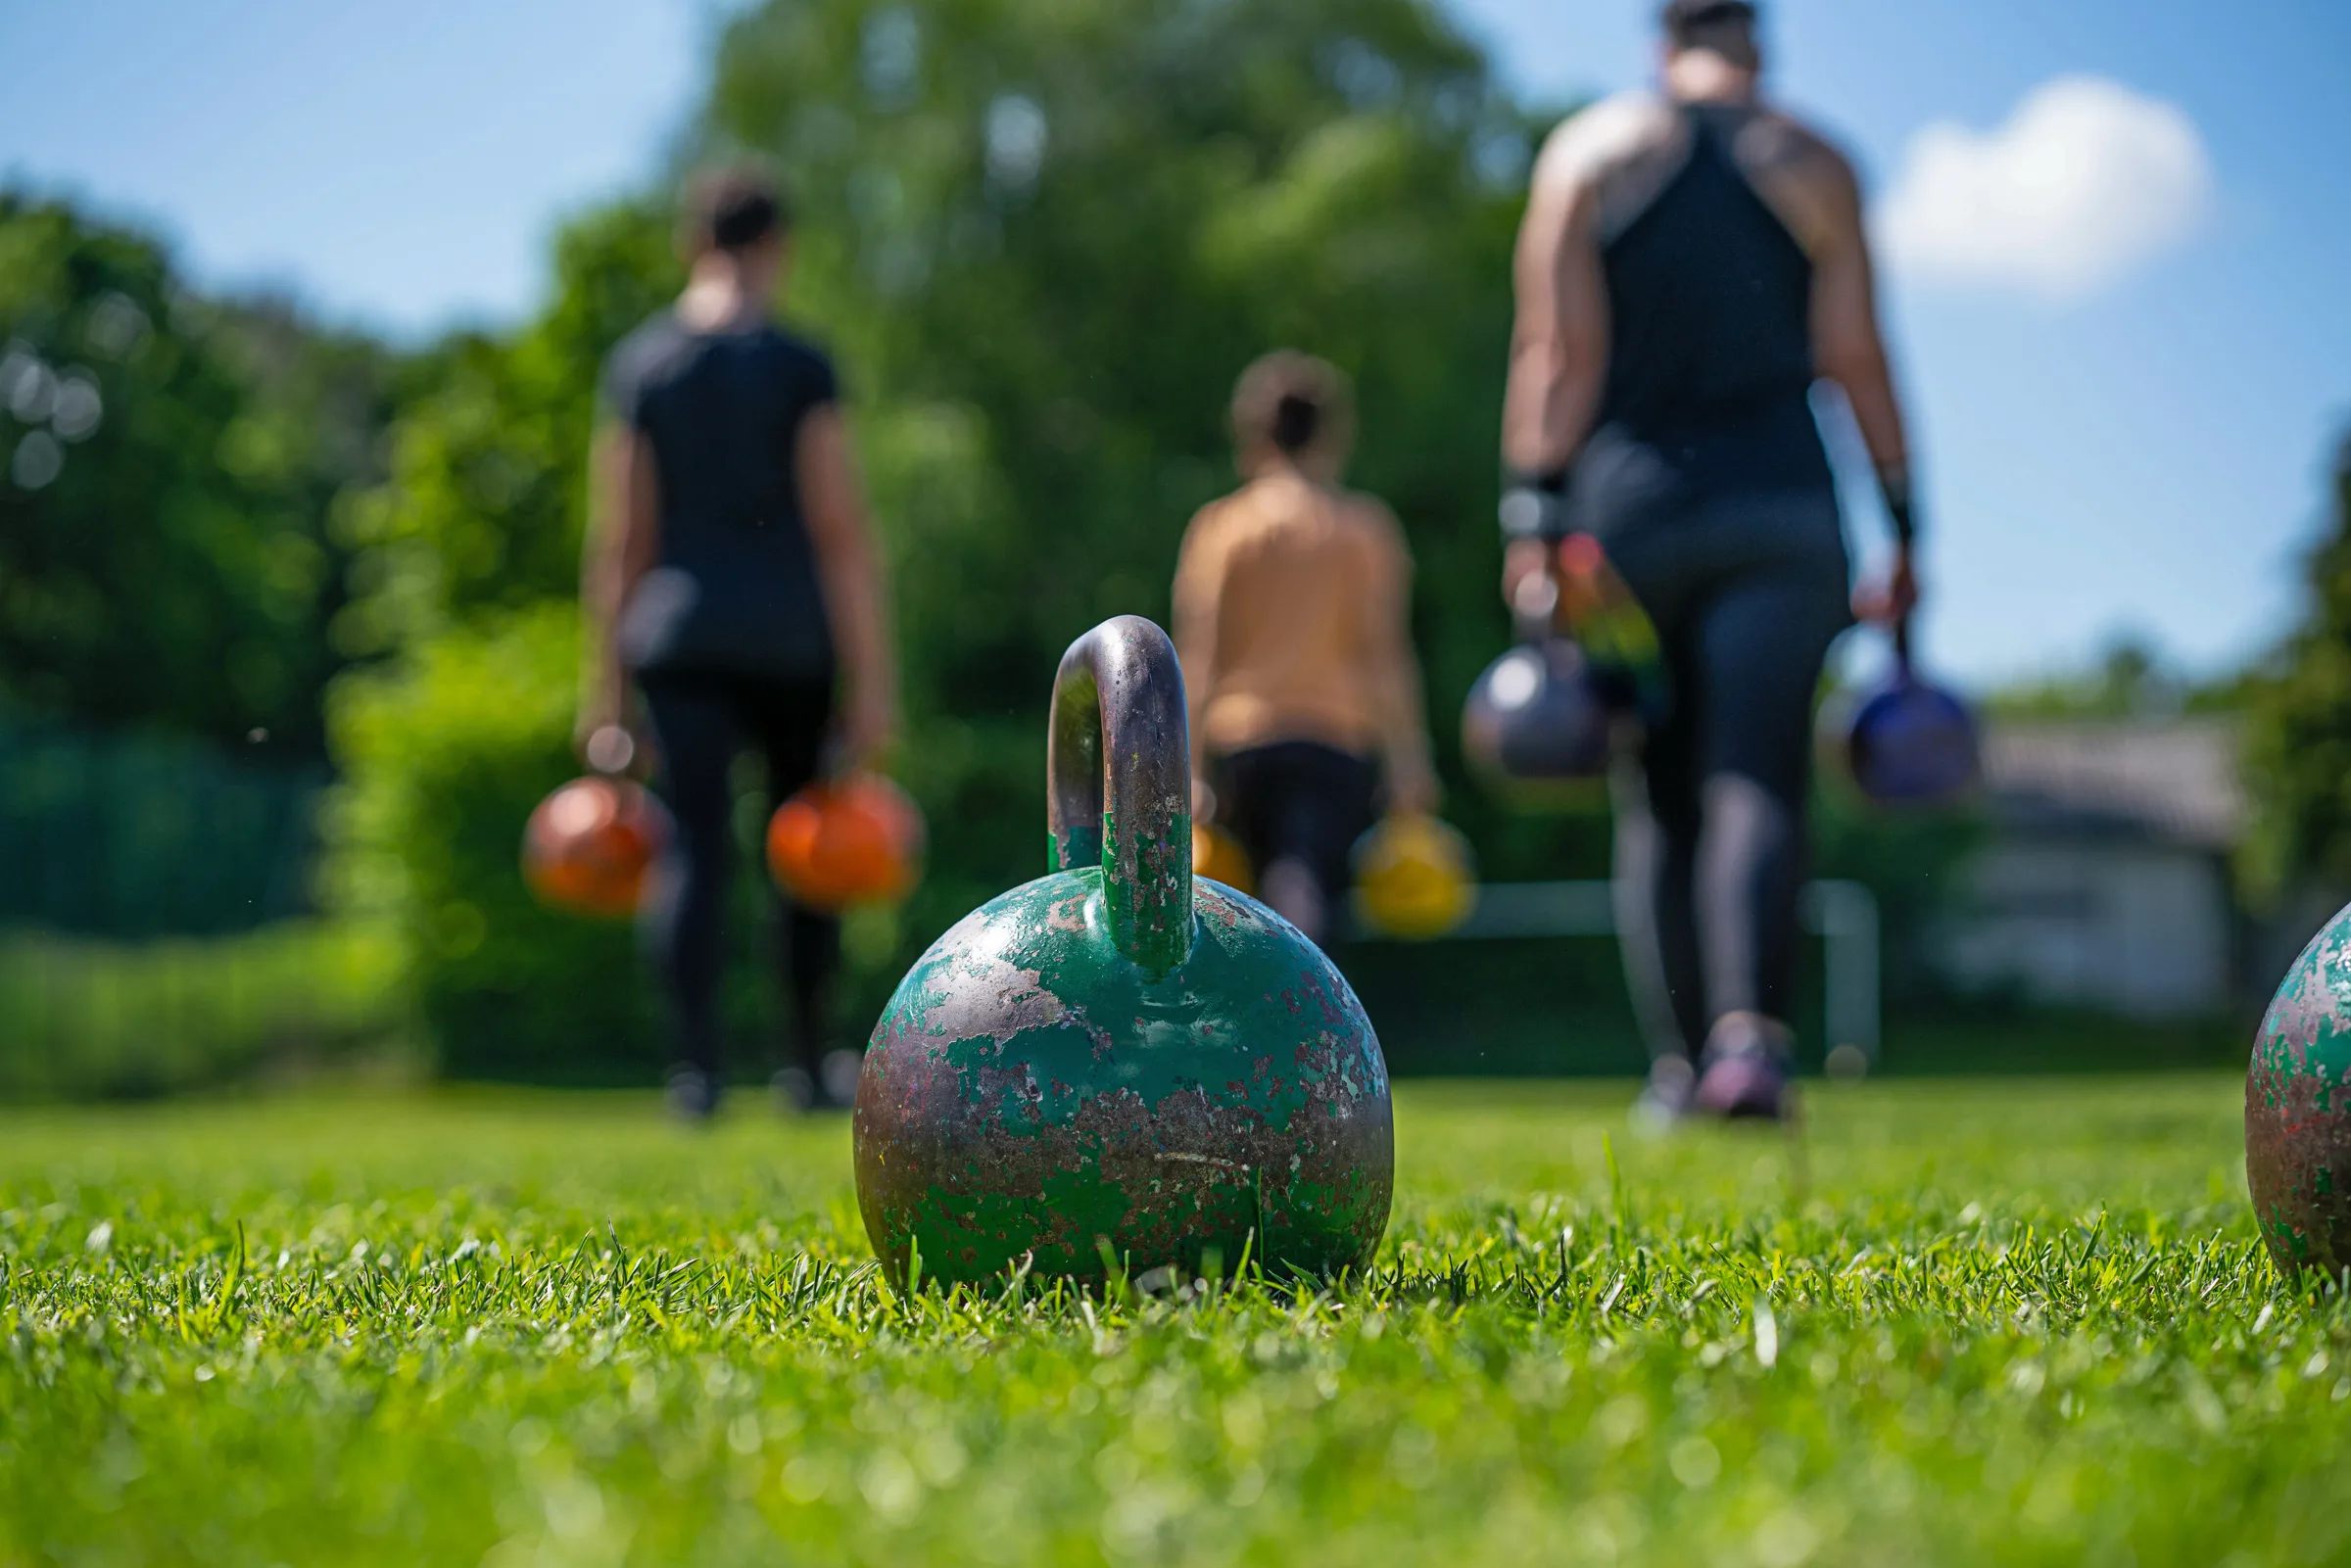 kettlebells in green grass - fitness concept outdoors